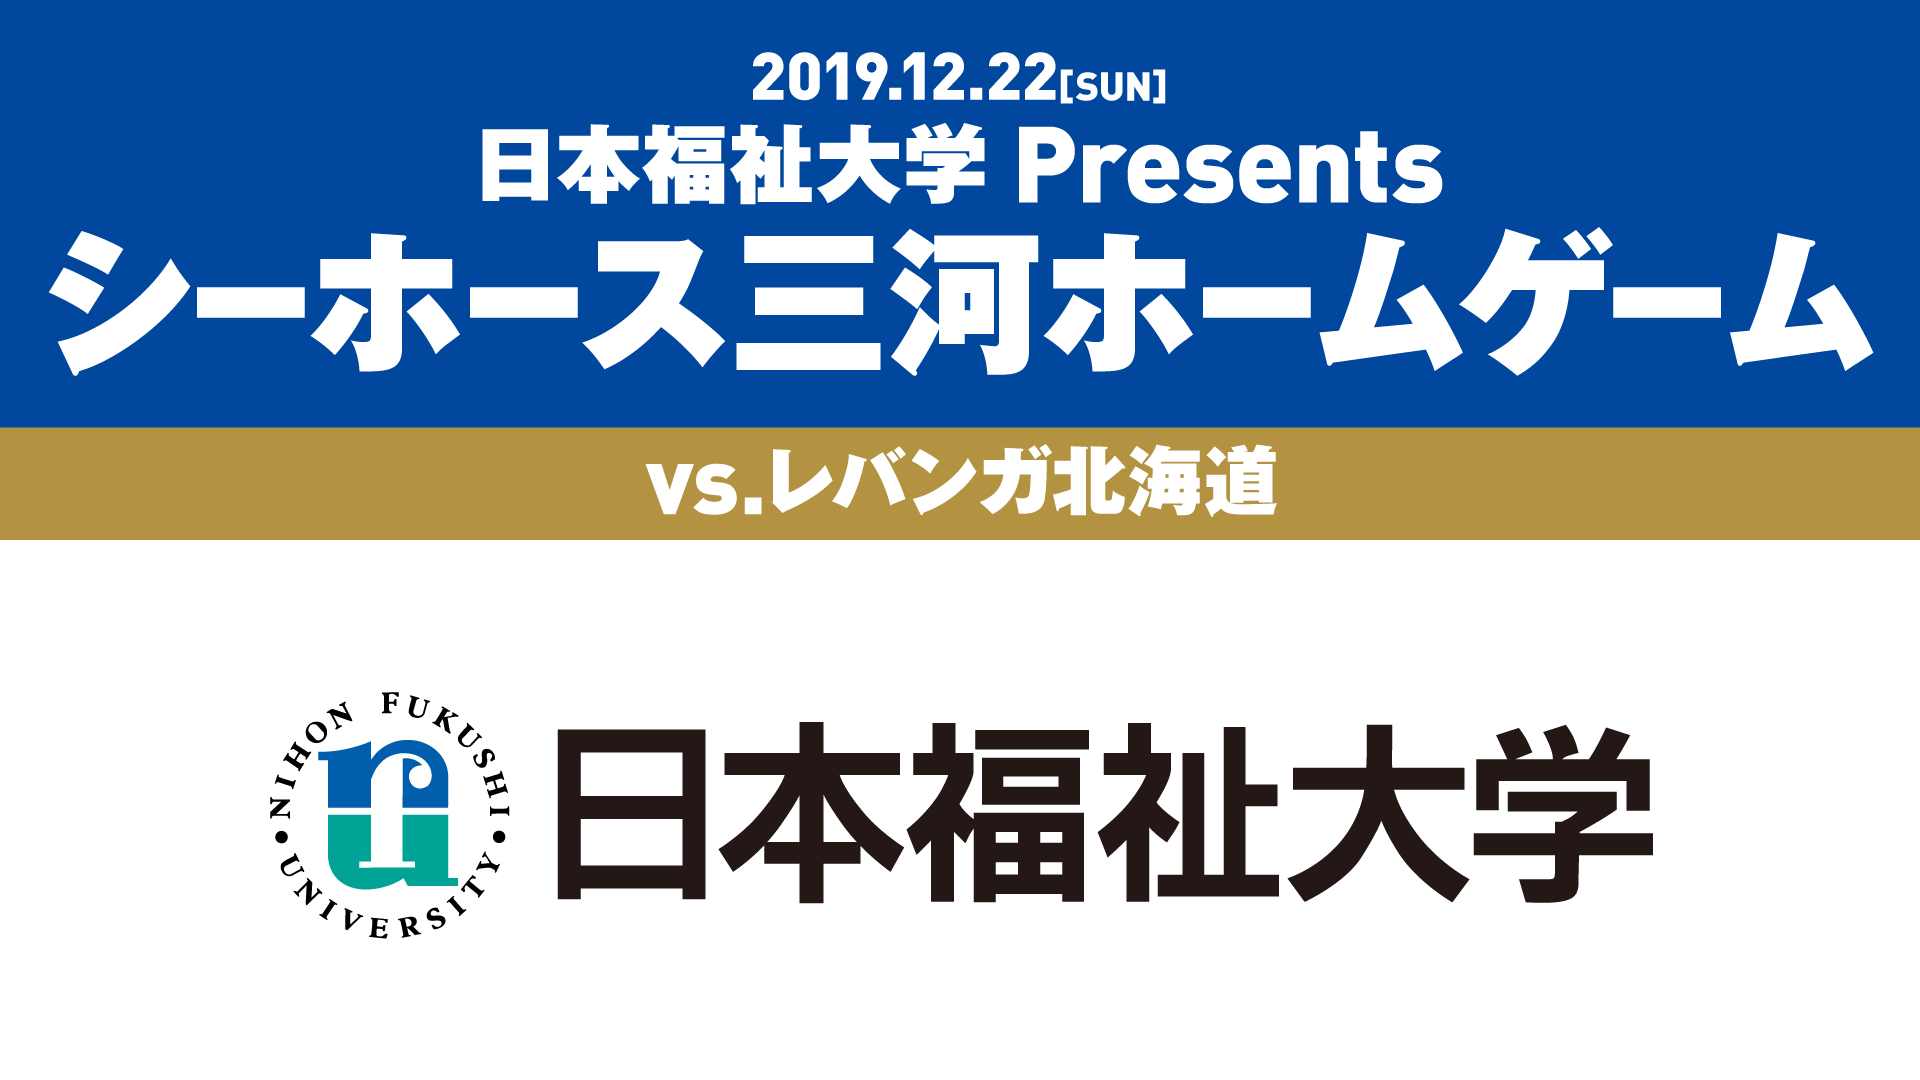 日本福祉大学 Presents シーホース三河ホームゲーム